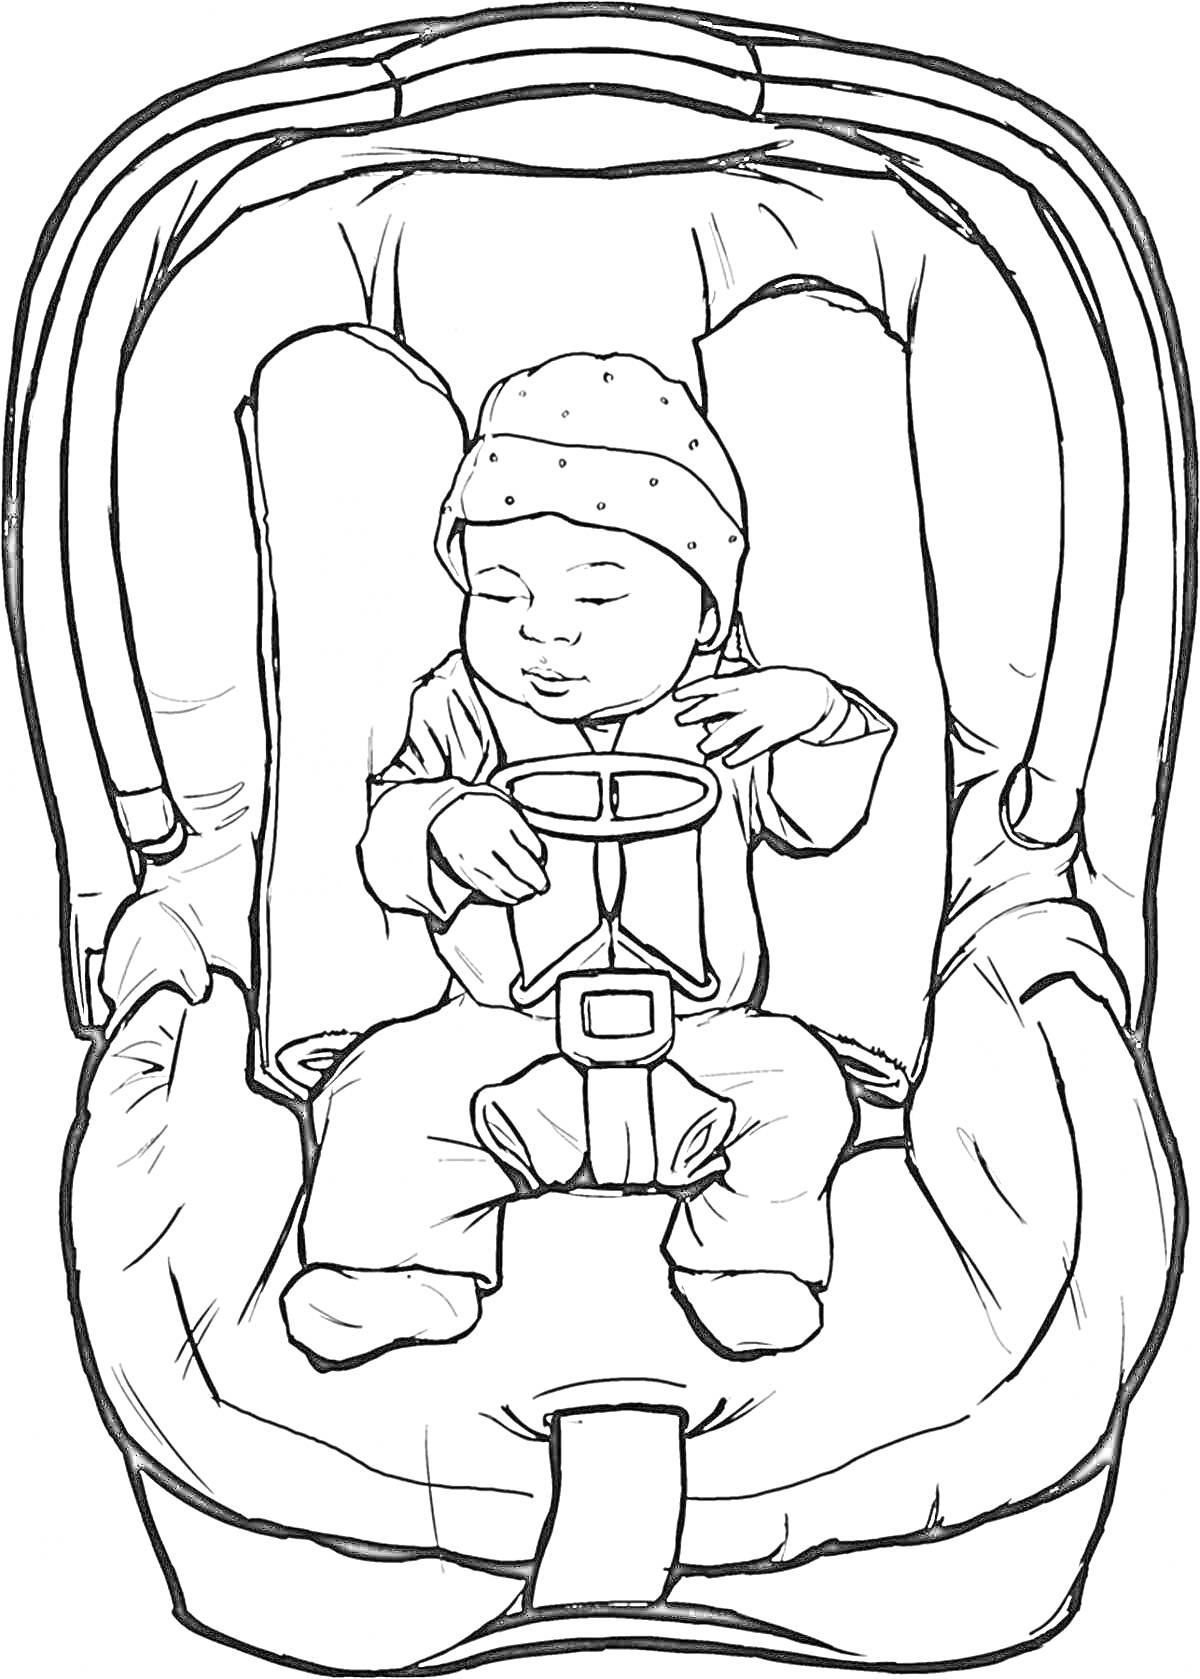 Раскраска Ребенок в автокресле, закутанный в комбинезон и шапочку, пристегнутый ремнями безопасности.